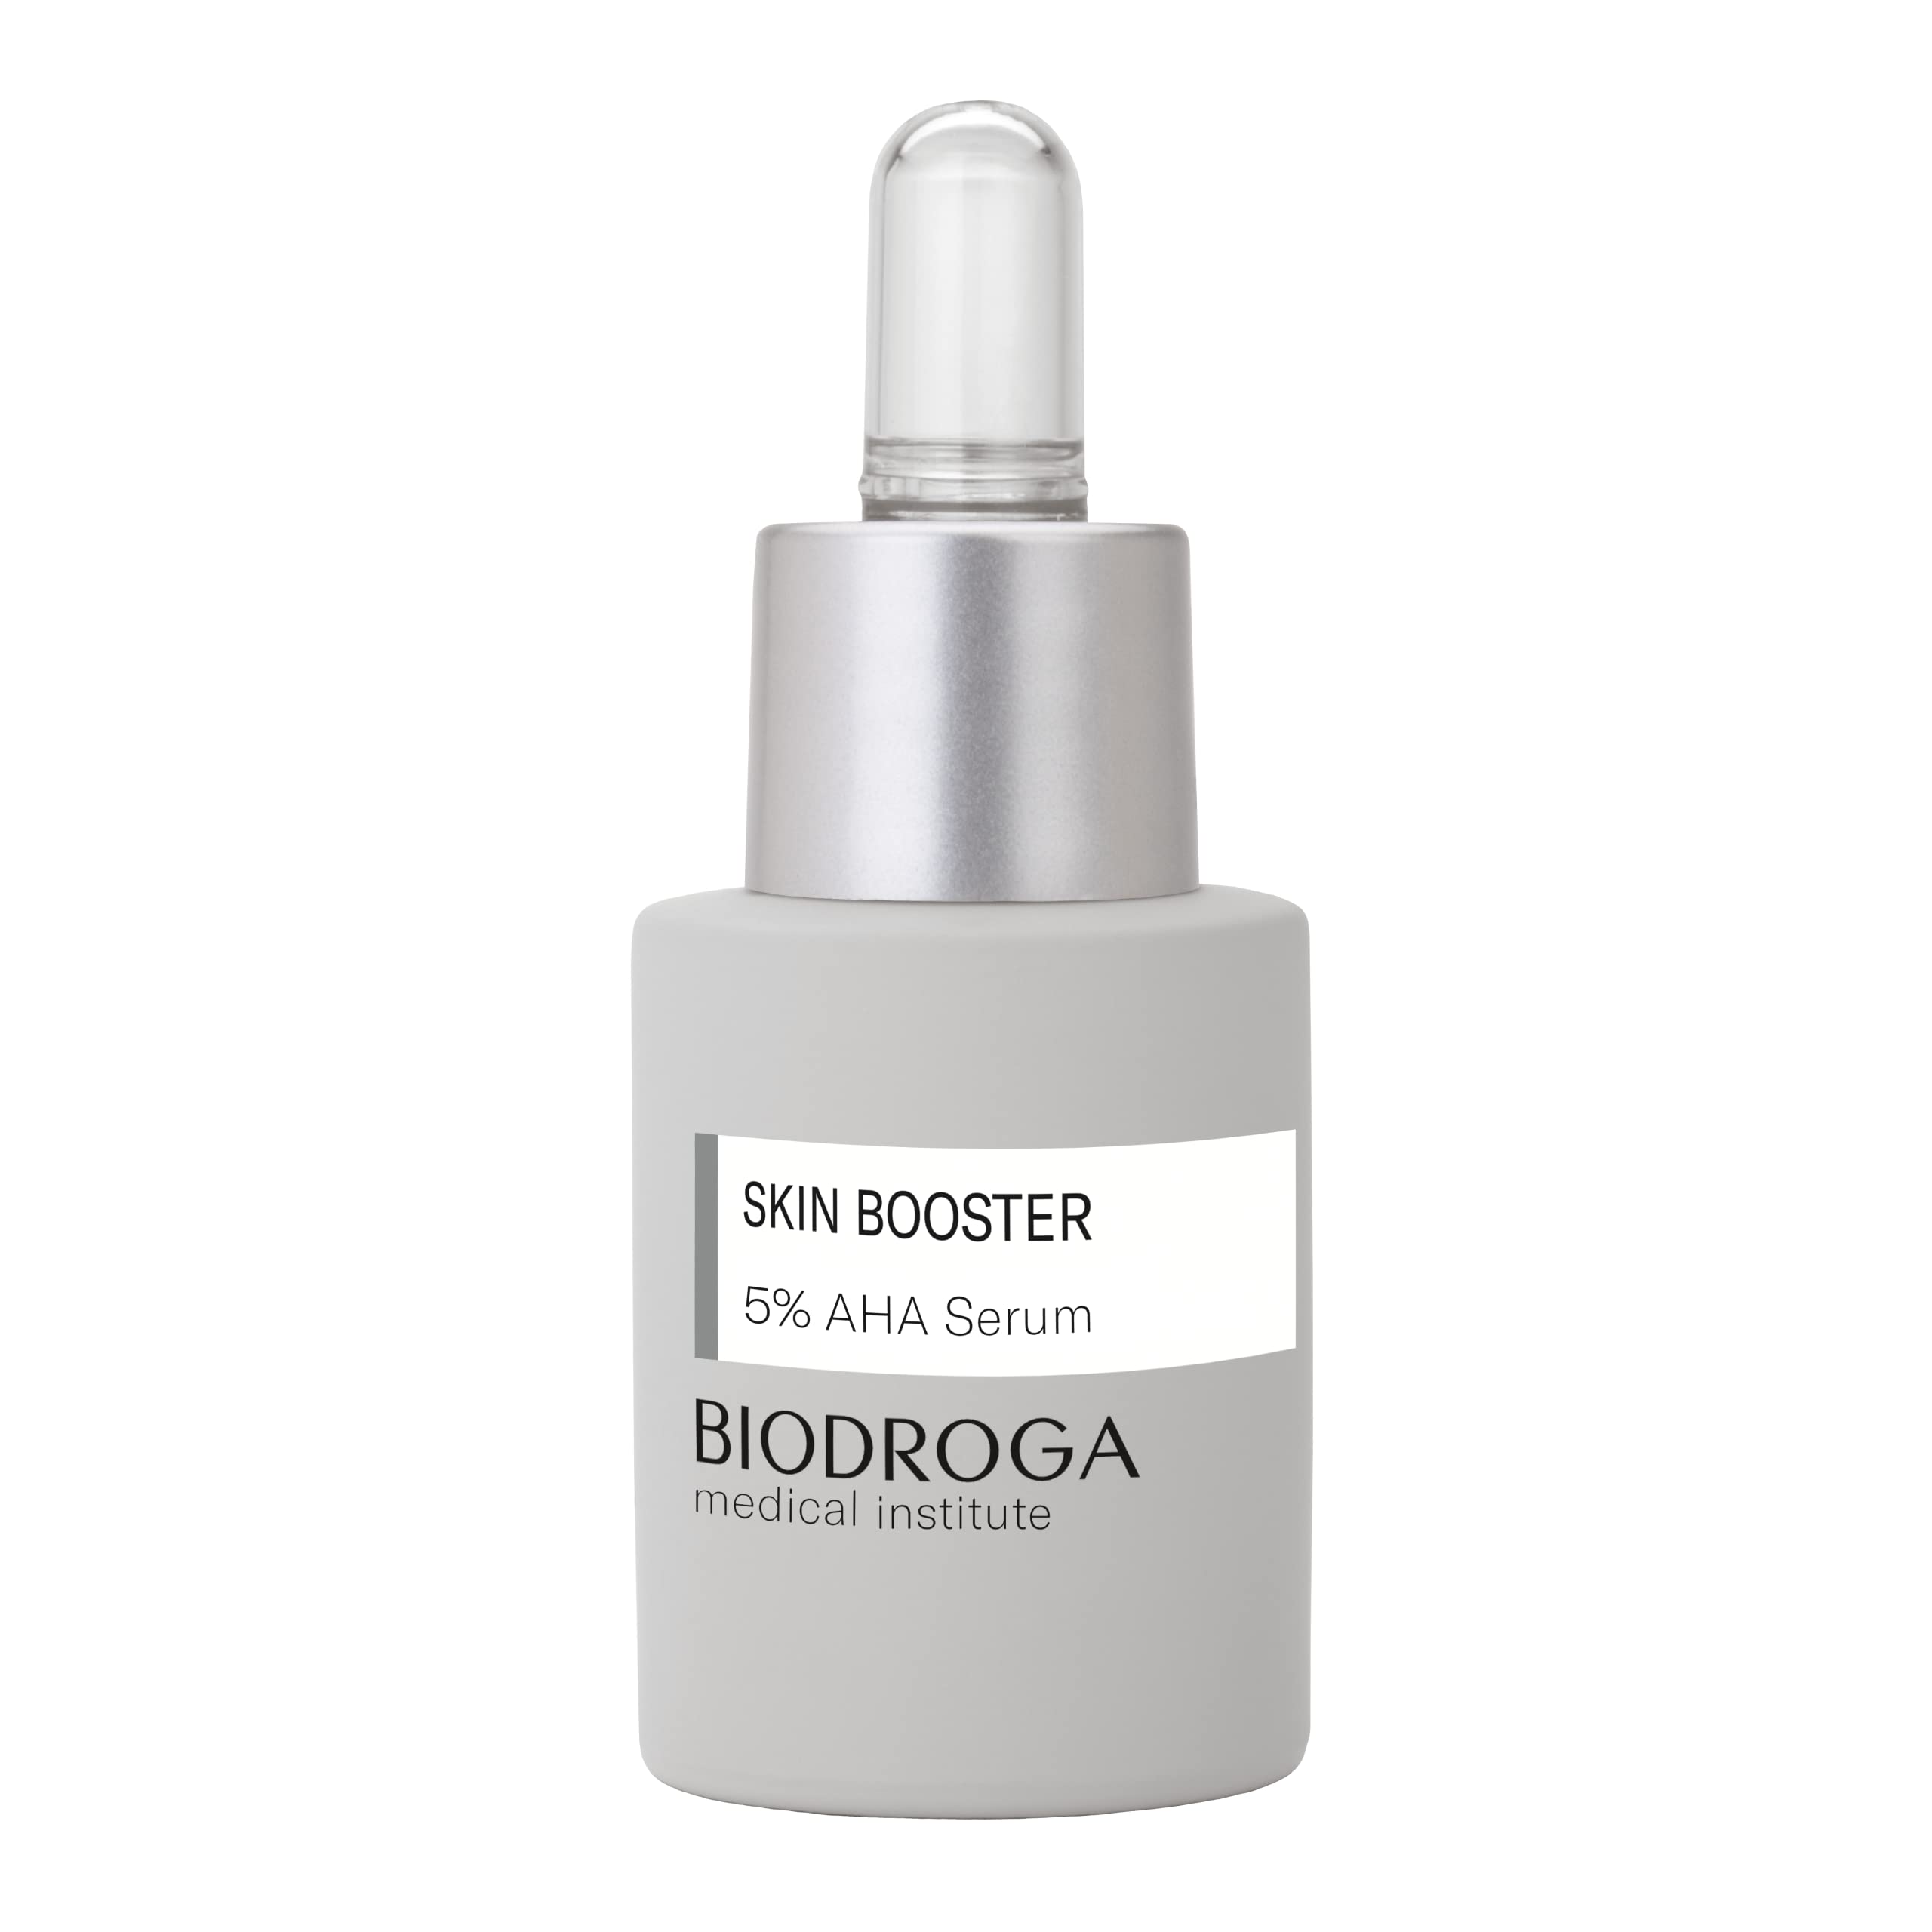 Biodroga Medical Institute Skin Booster - 5% AHA Serum - 15 ml